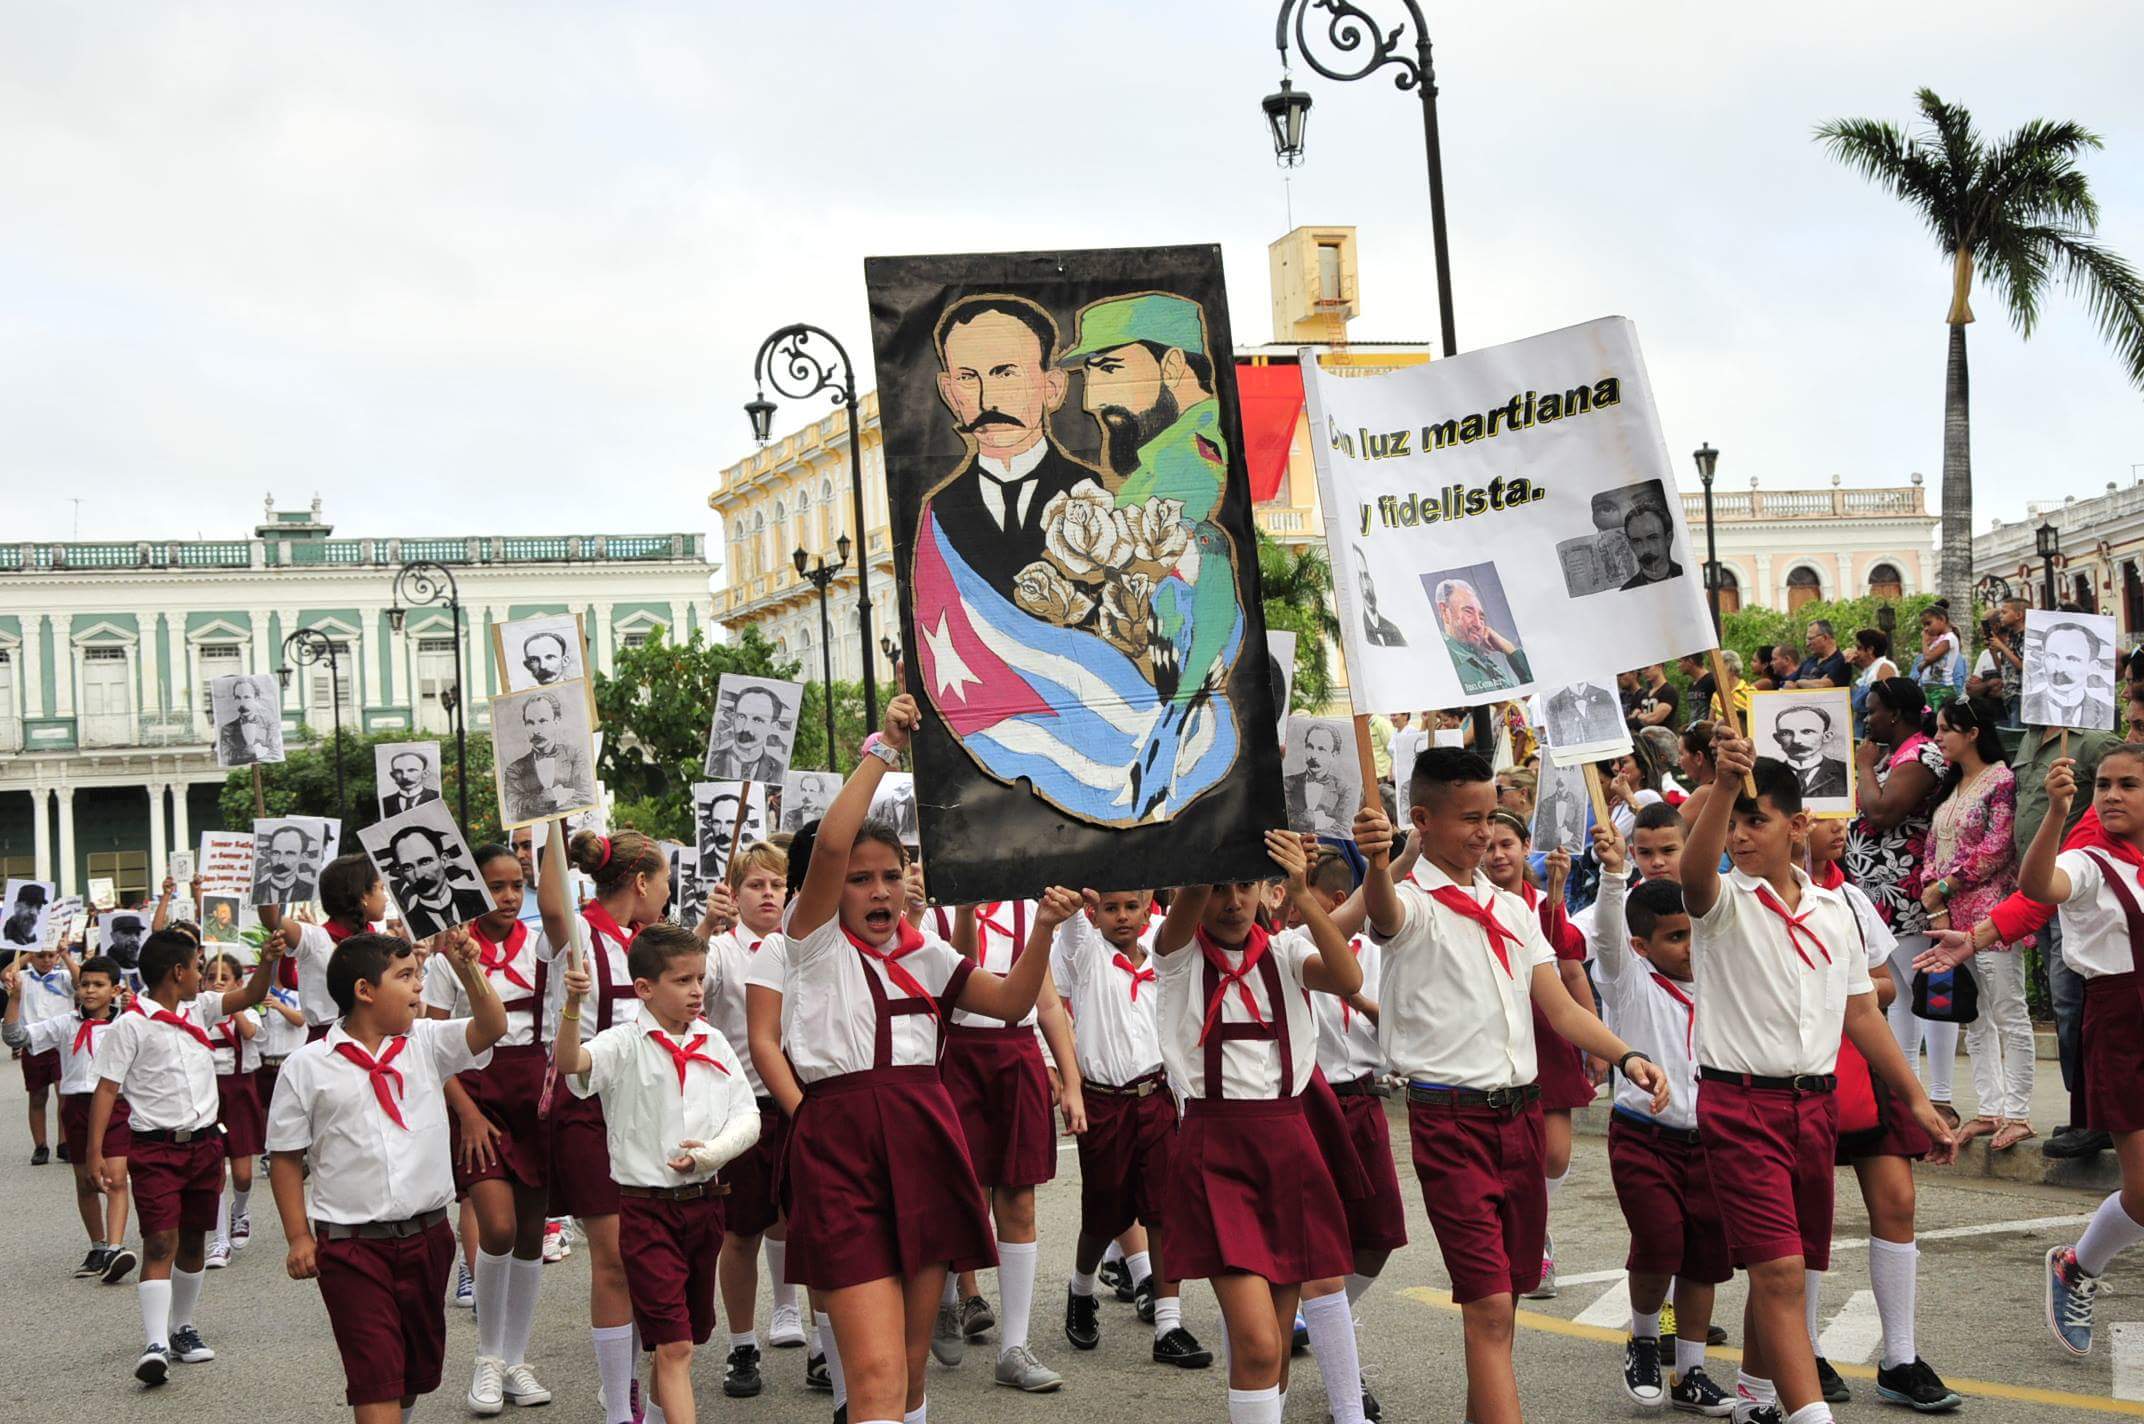 José Martí, desfile martiano, Sancti Spíritus, natalicio